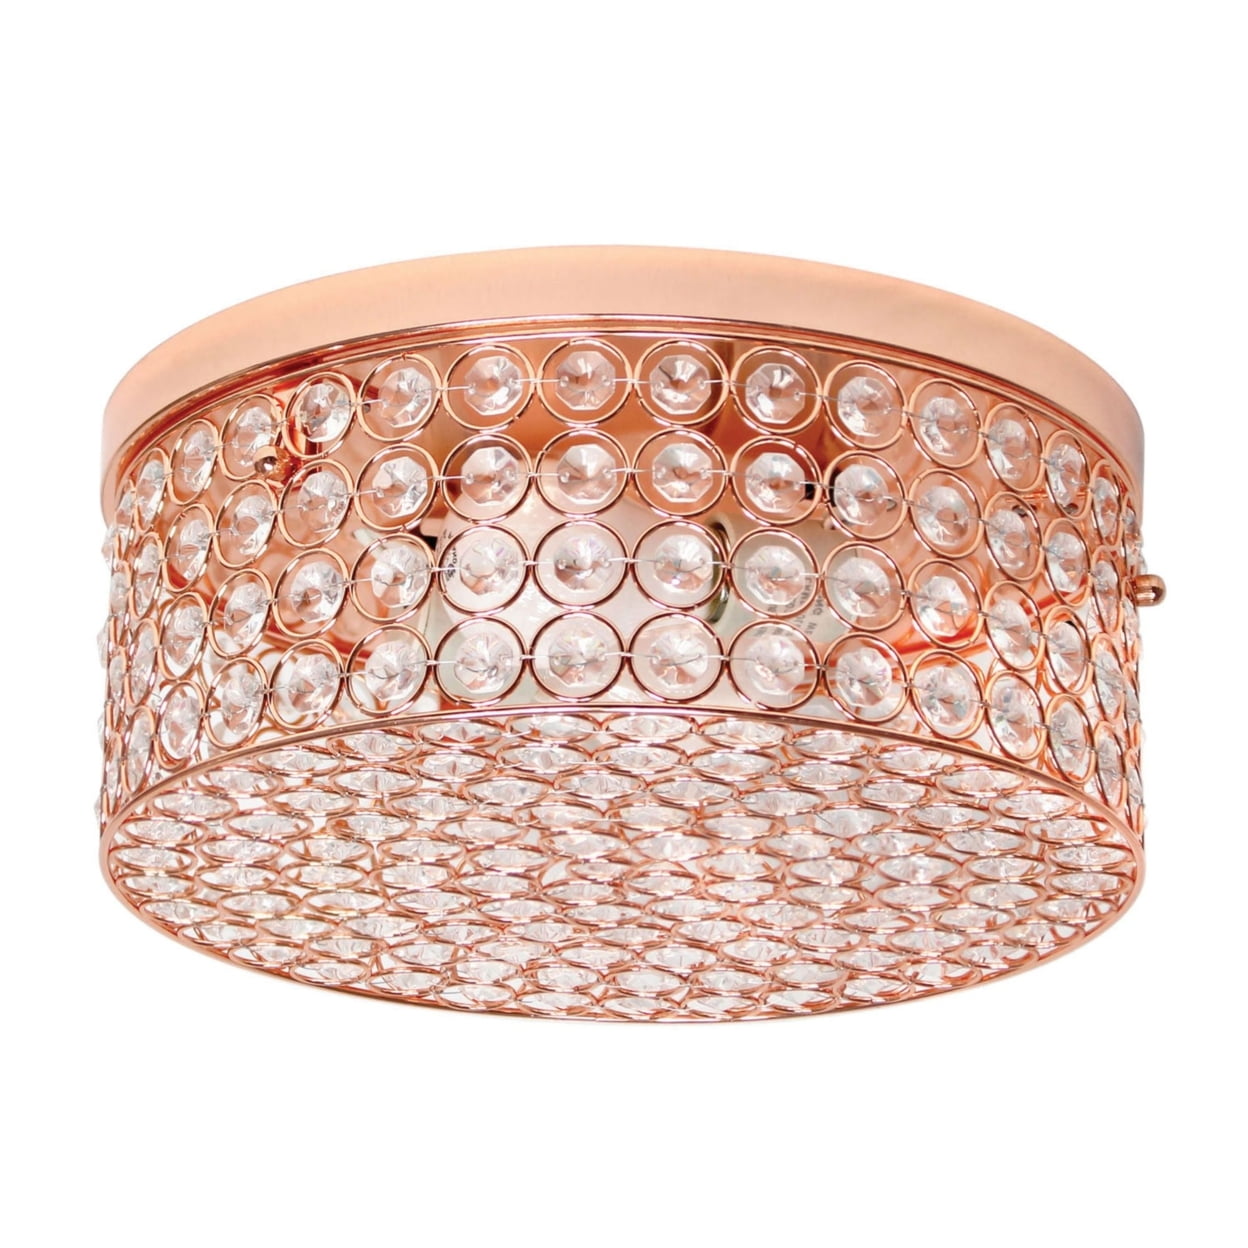 Elegant Designs Fm1003-rgd 12 In. Elipse Crystal 2 Light Round Ceiling Flush Mount, Rose Gold